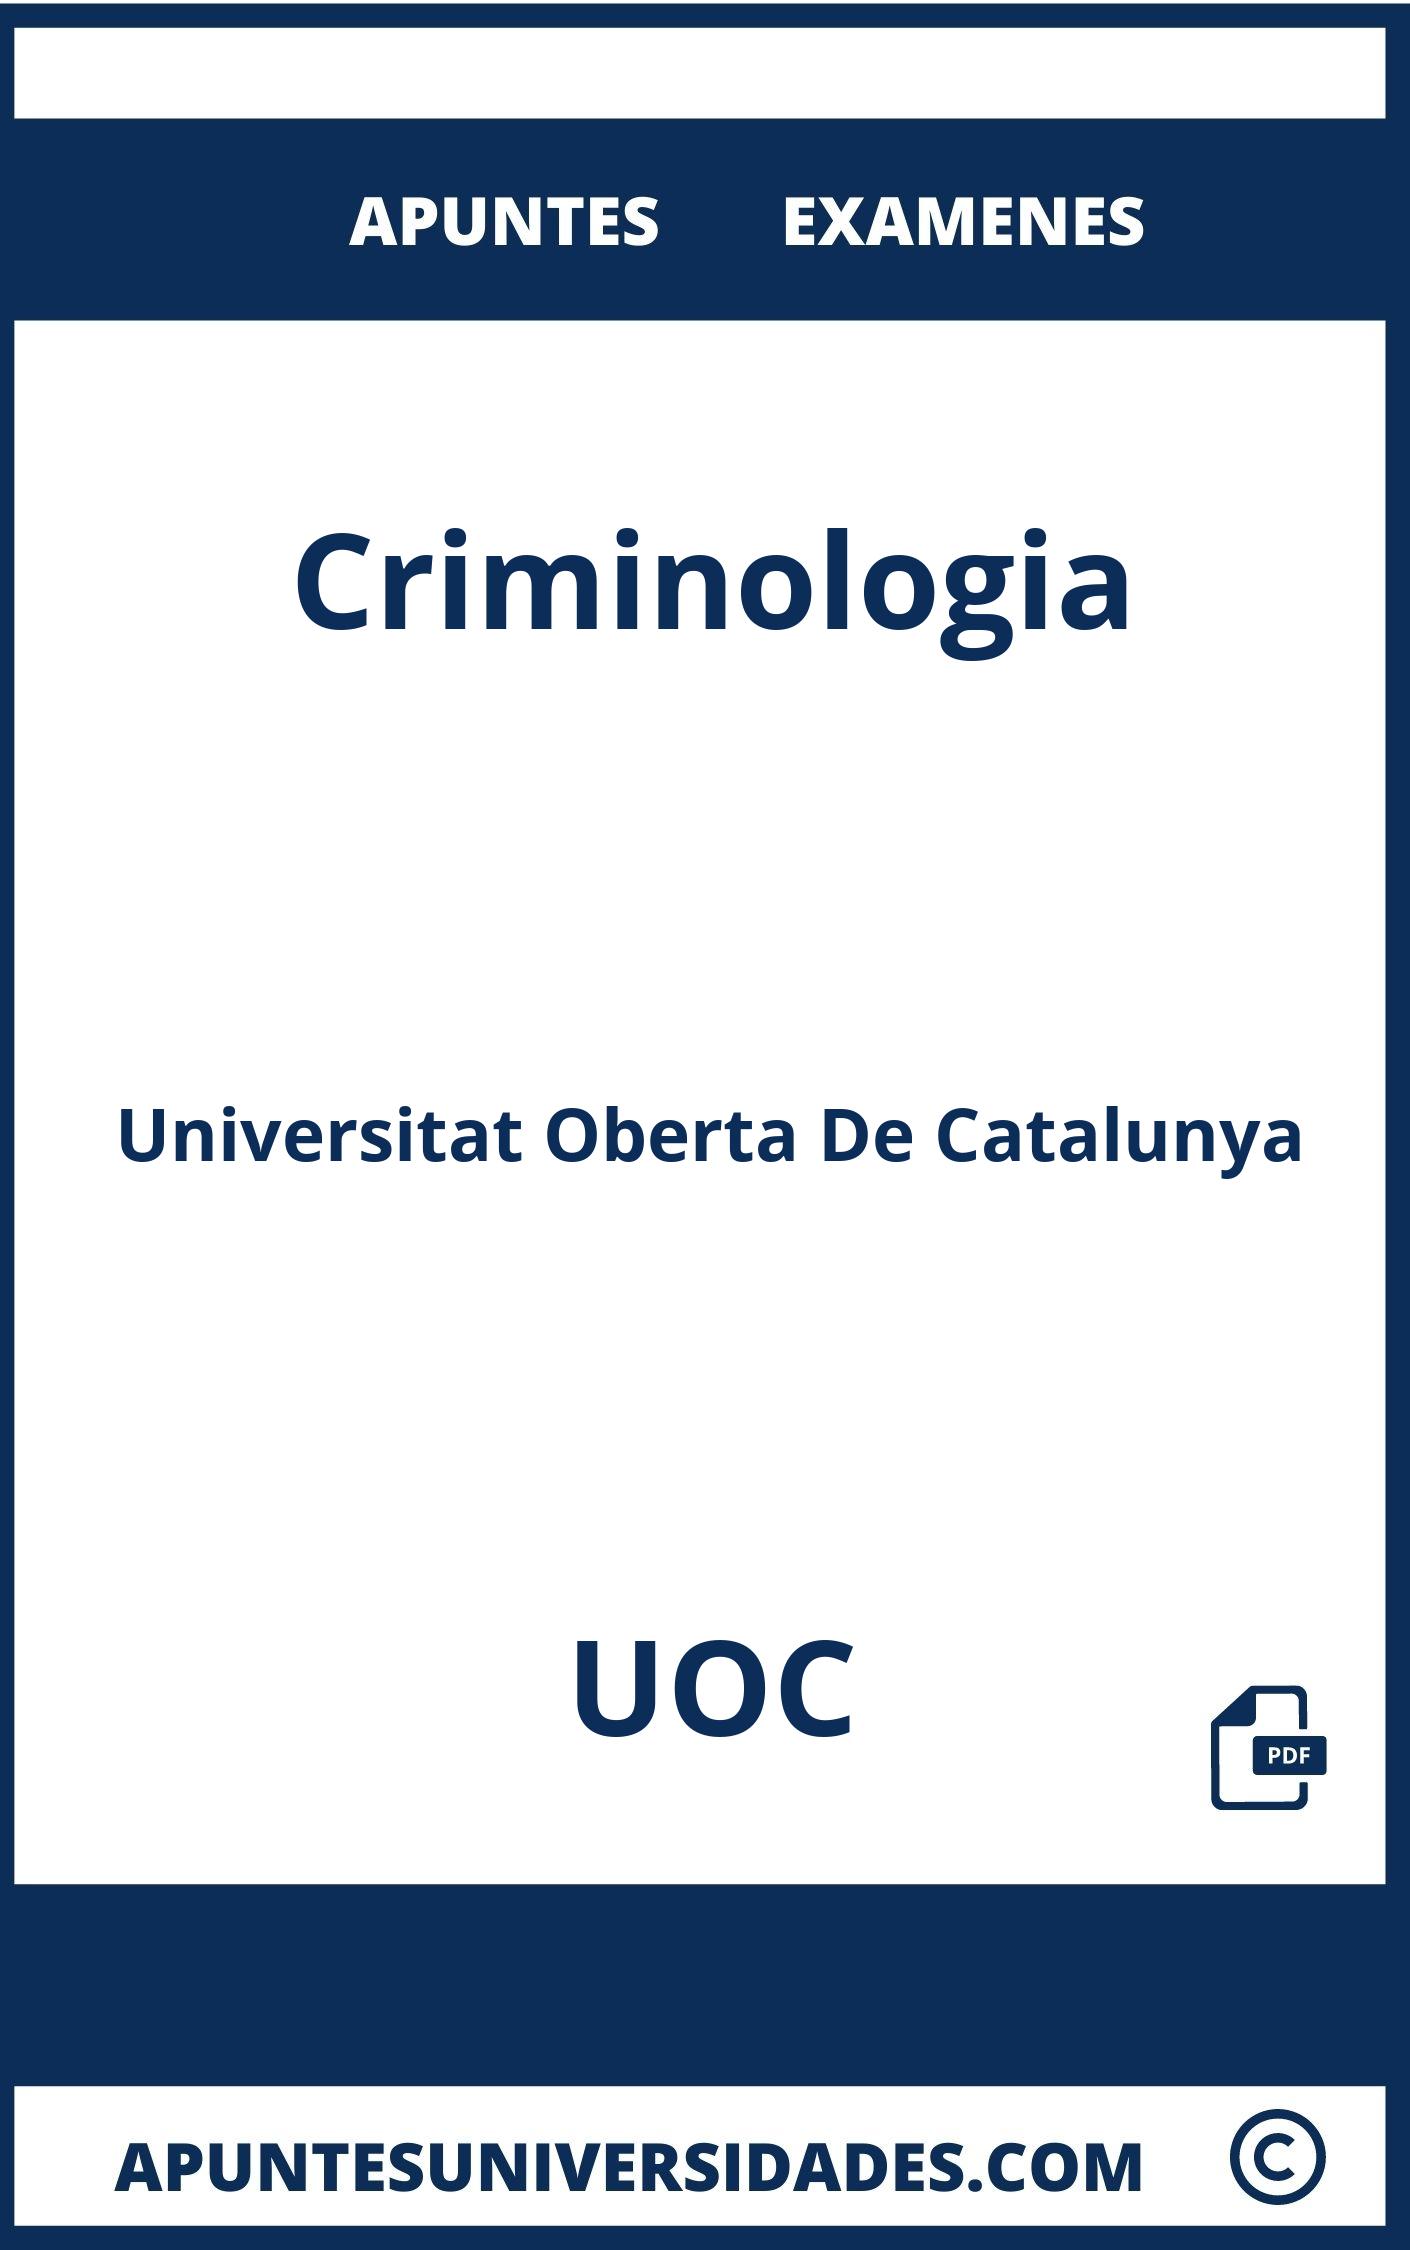 Examenes y Apuntes de Criminologia UOC